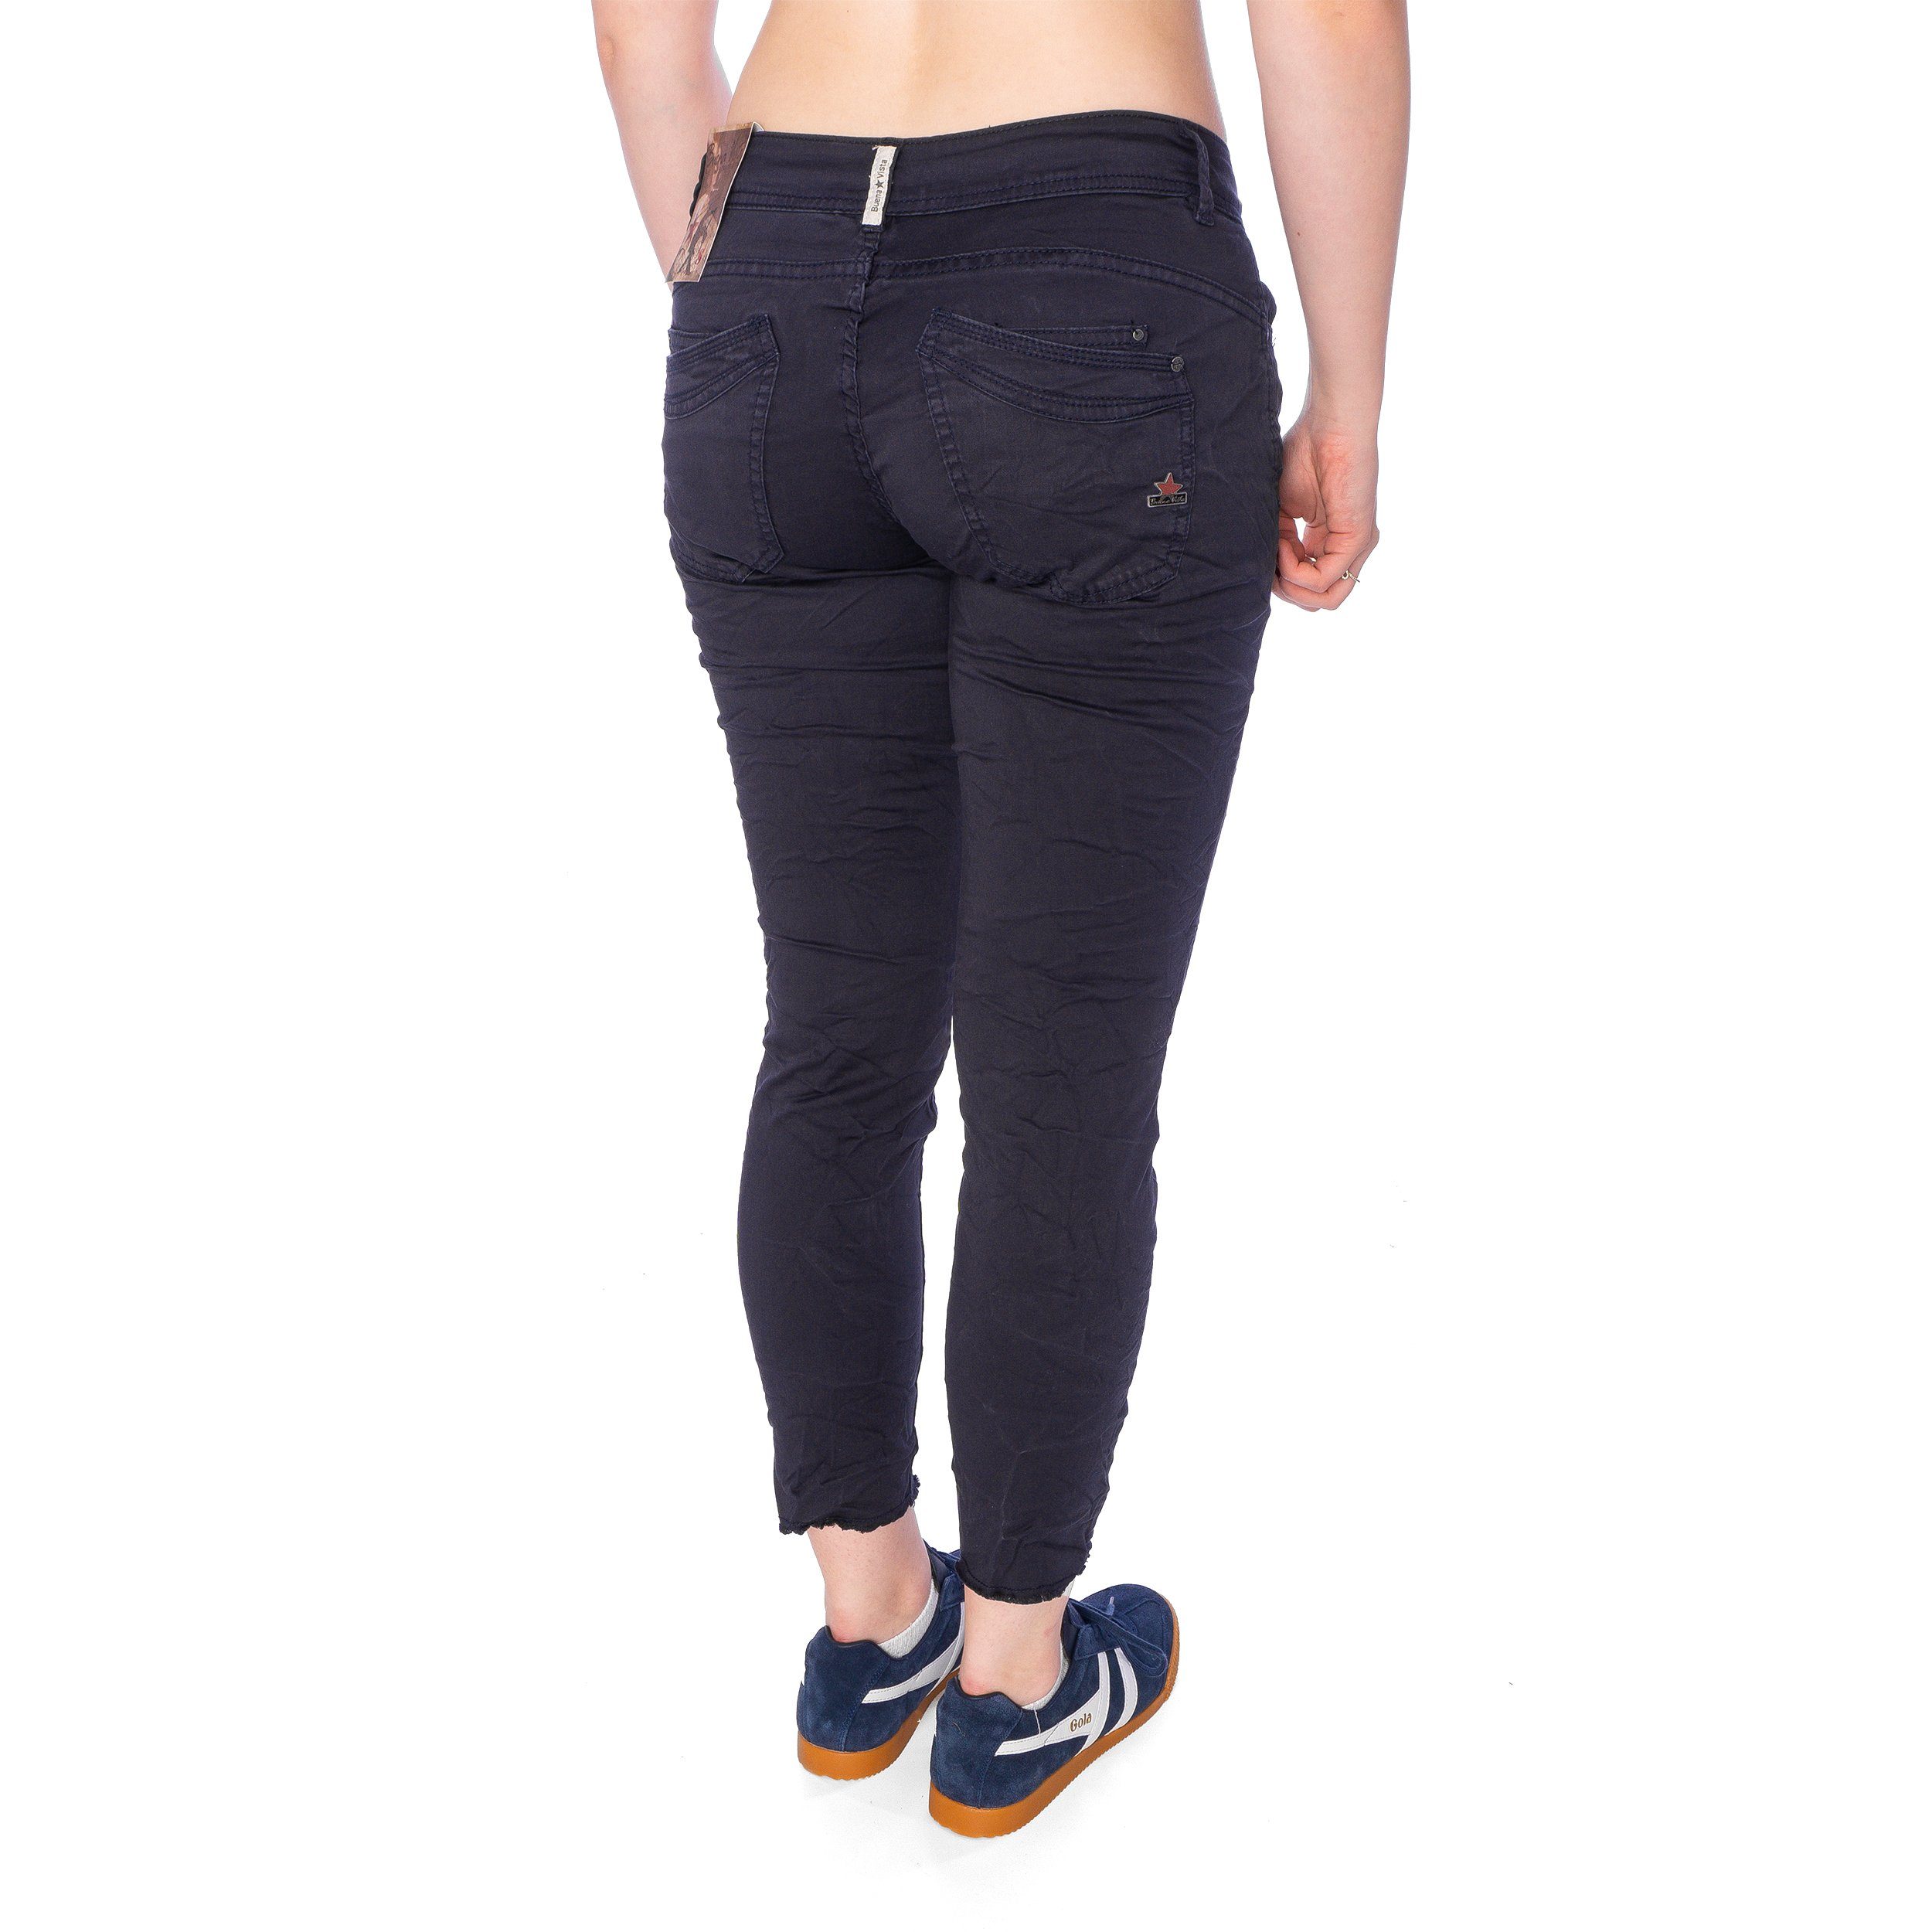 Damen Jeans 7/8 Vista Hose twill dark blue stretch Buena Vista Slim-fit-Jeans Buena Malibu